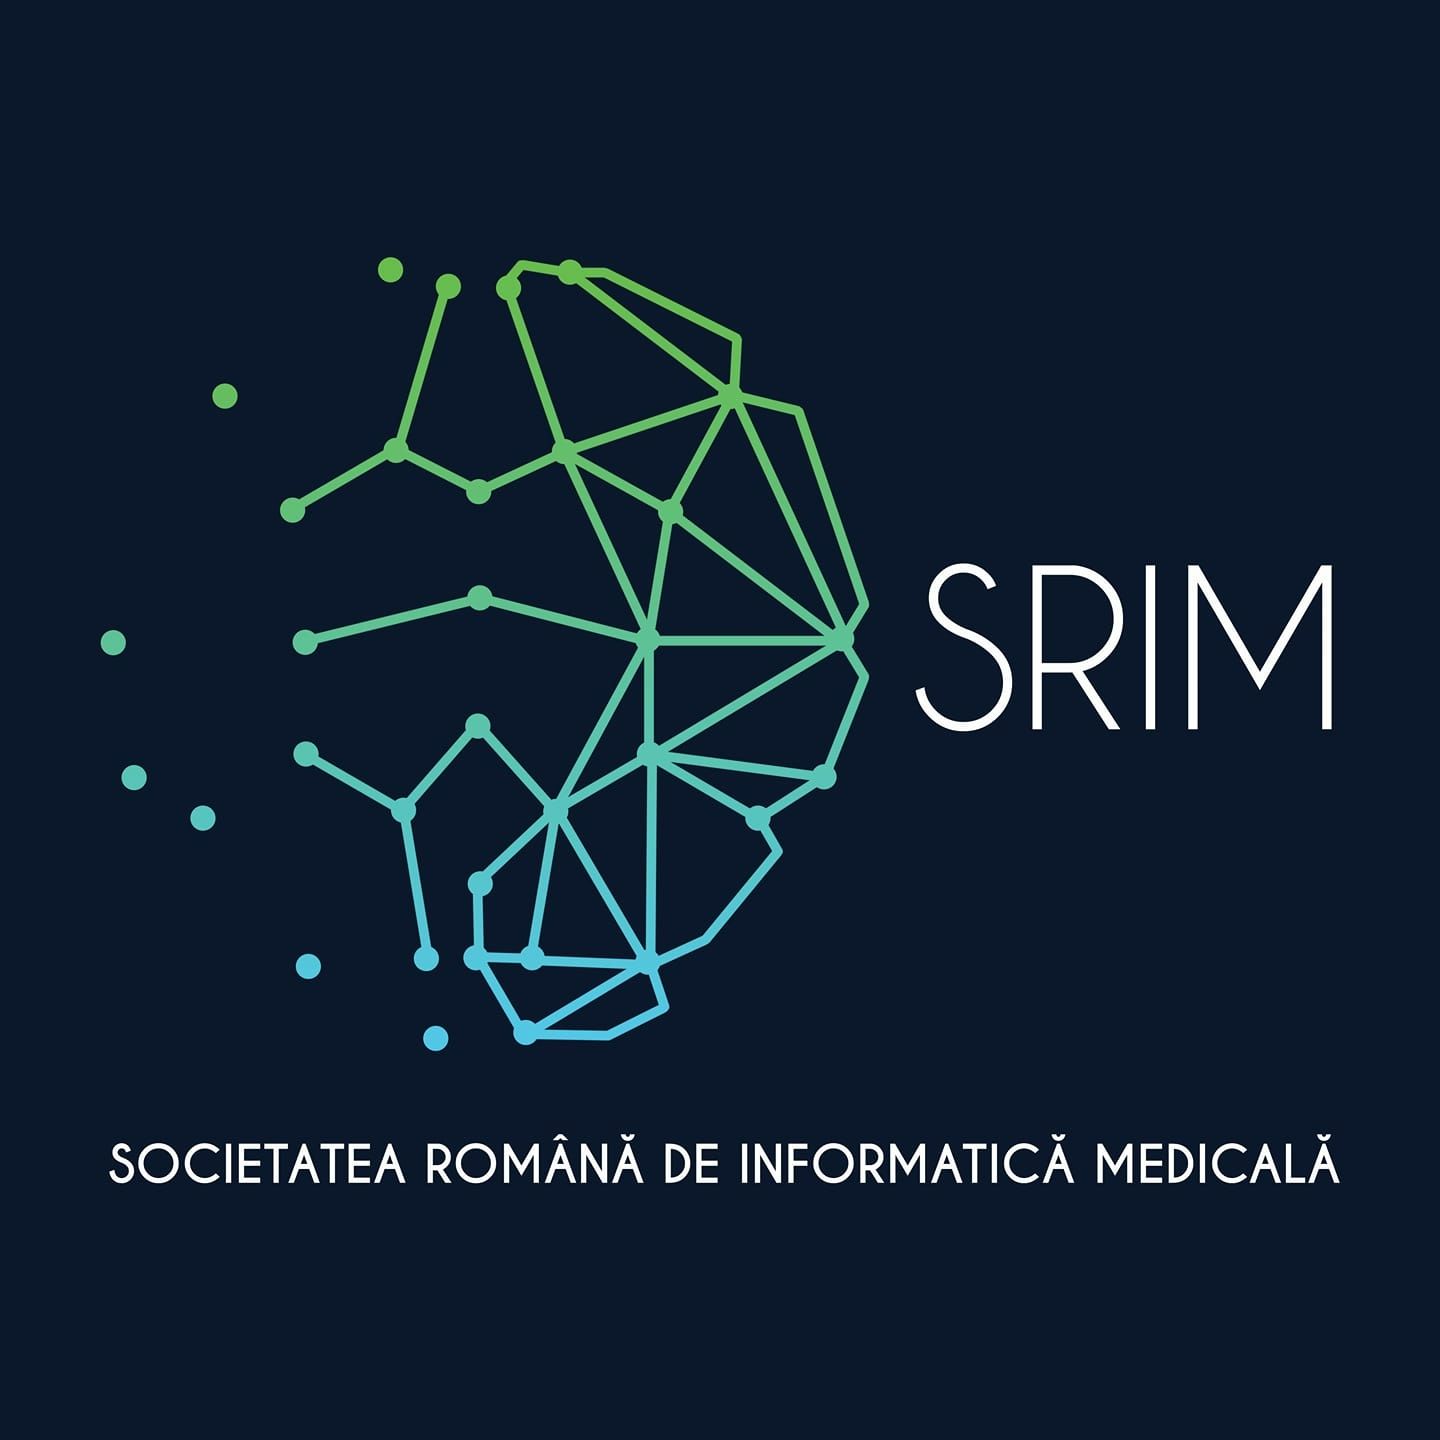 SRIM: spitalele universitare ar putea face cercetare în informatica medicală